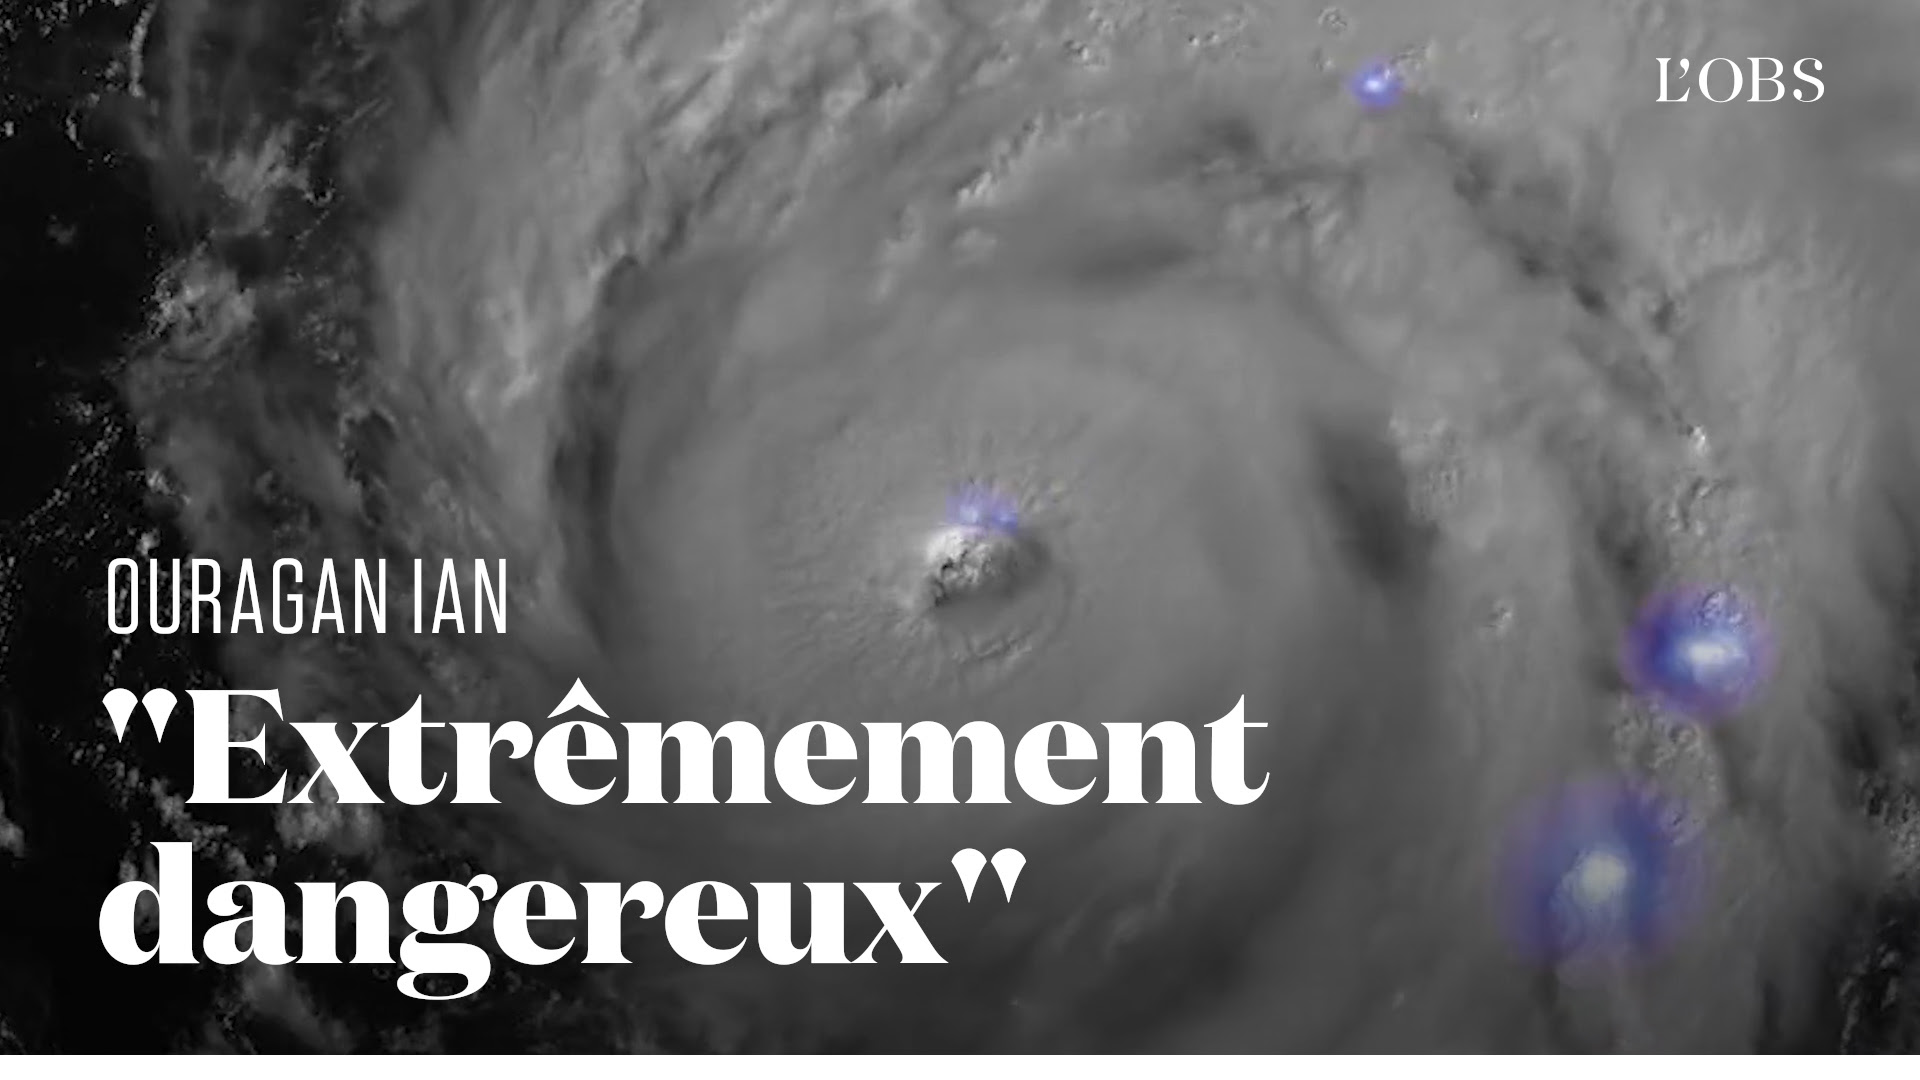 De Cuba à la Floride, l'ouragan Ian passe à la catégorie 4 avec des risques de dégâts considérables